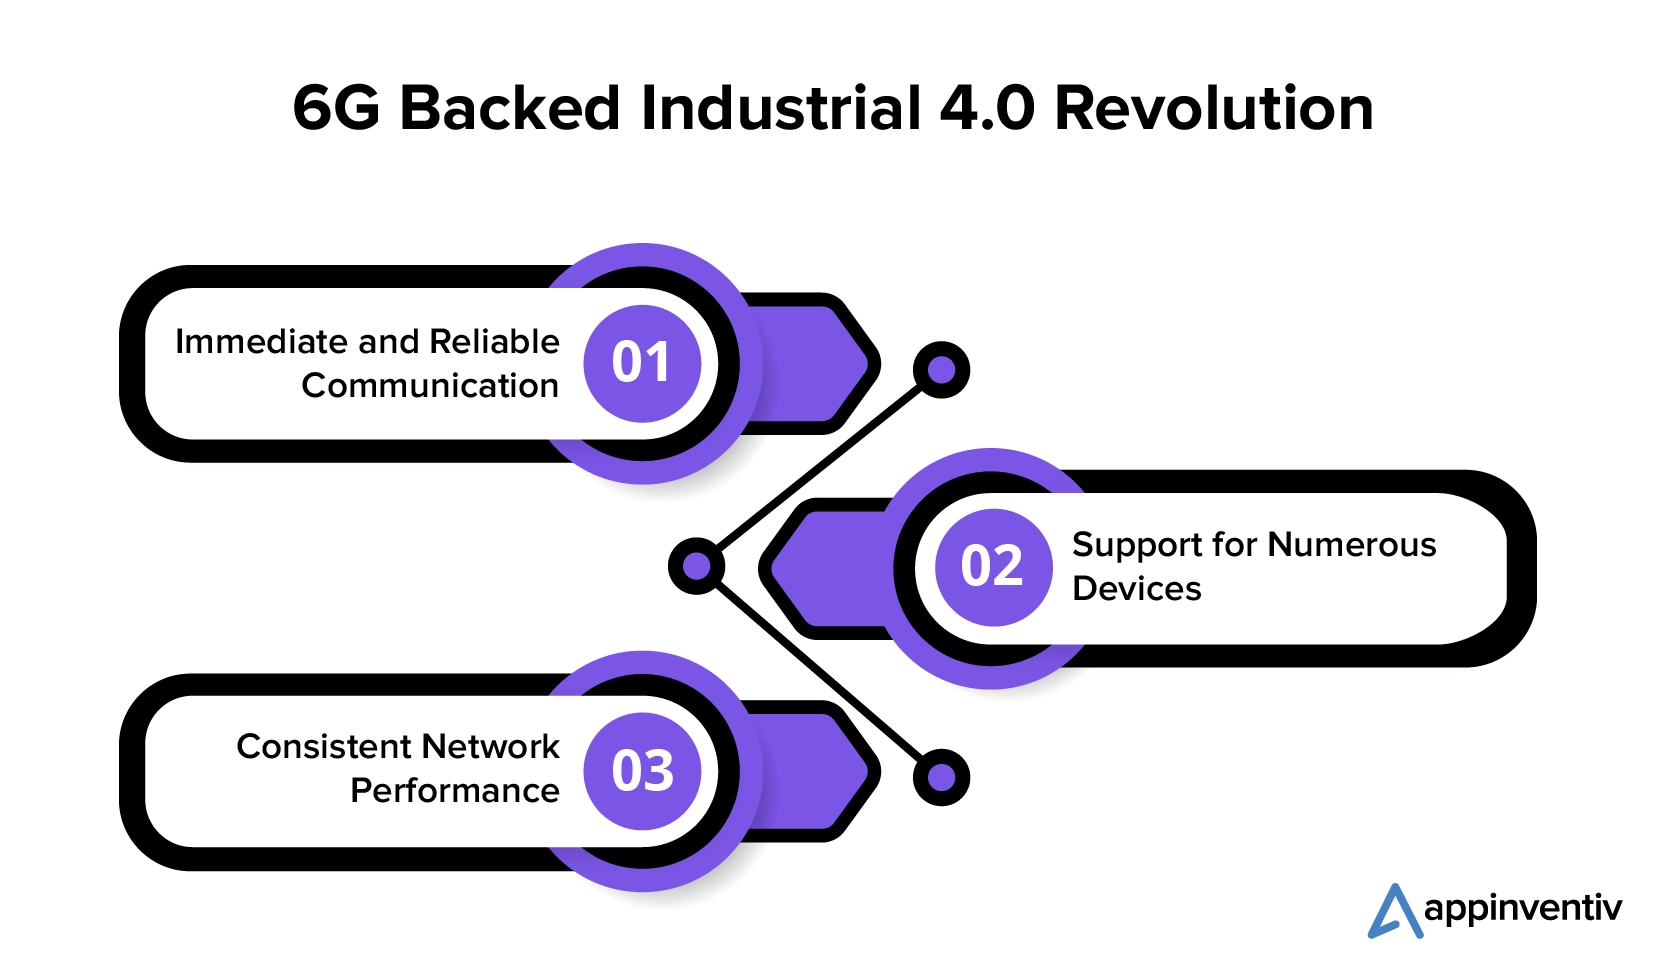 6G Backed Industrial 4.0 Revolution